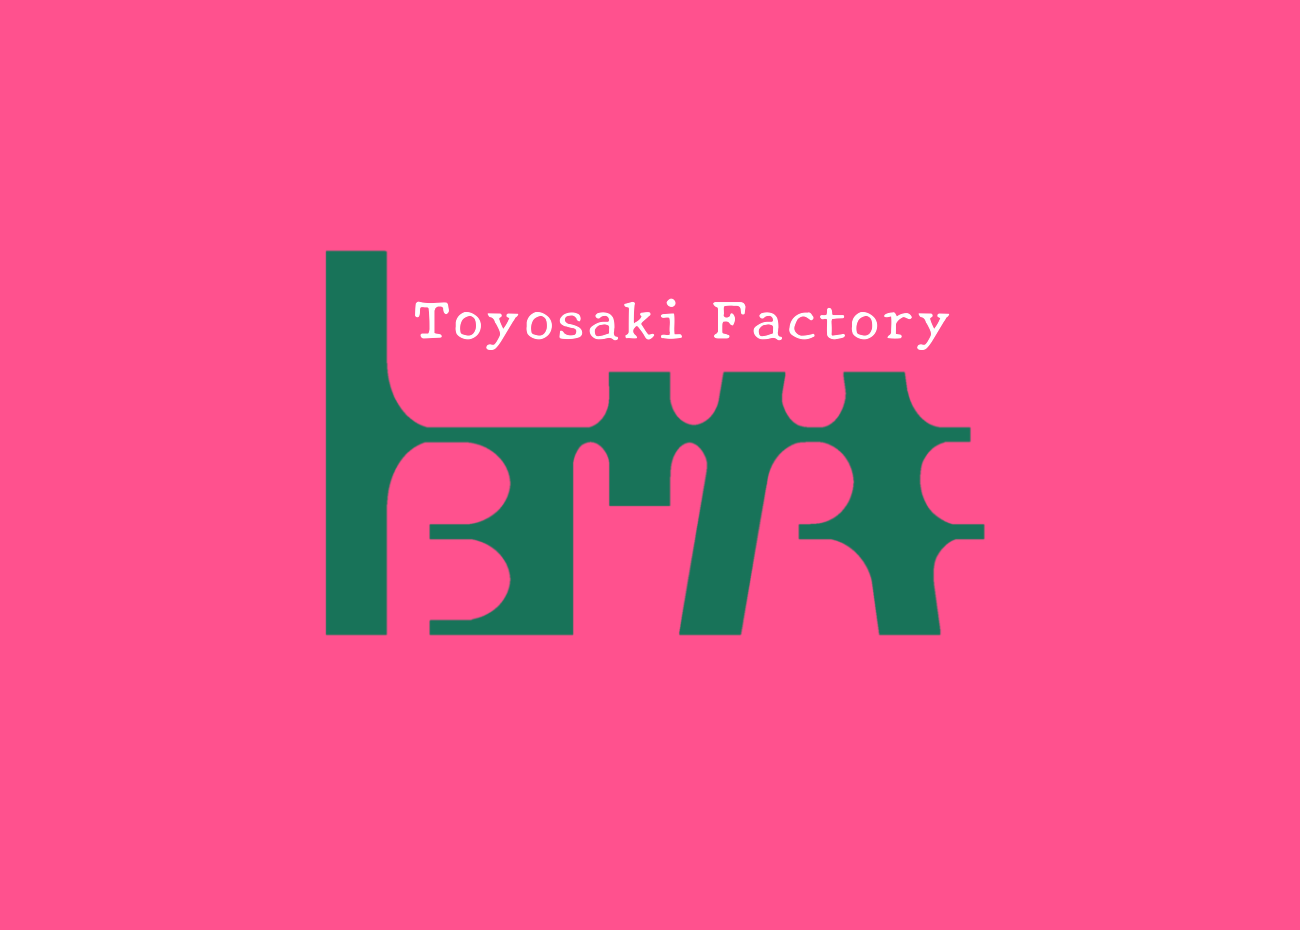 トヨサキ製作所/toyosakifactory